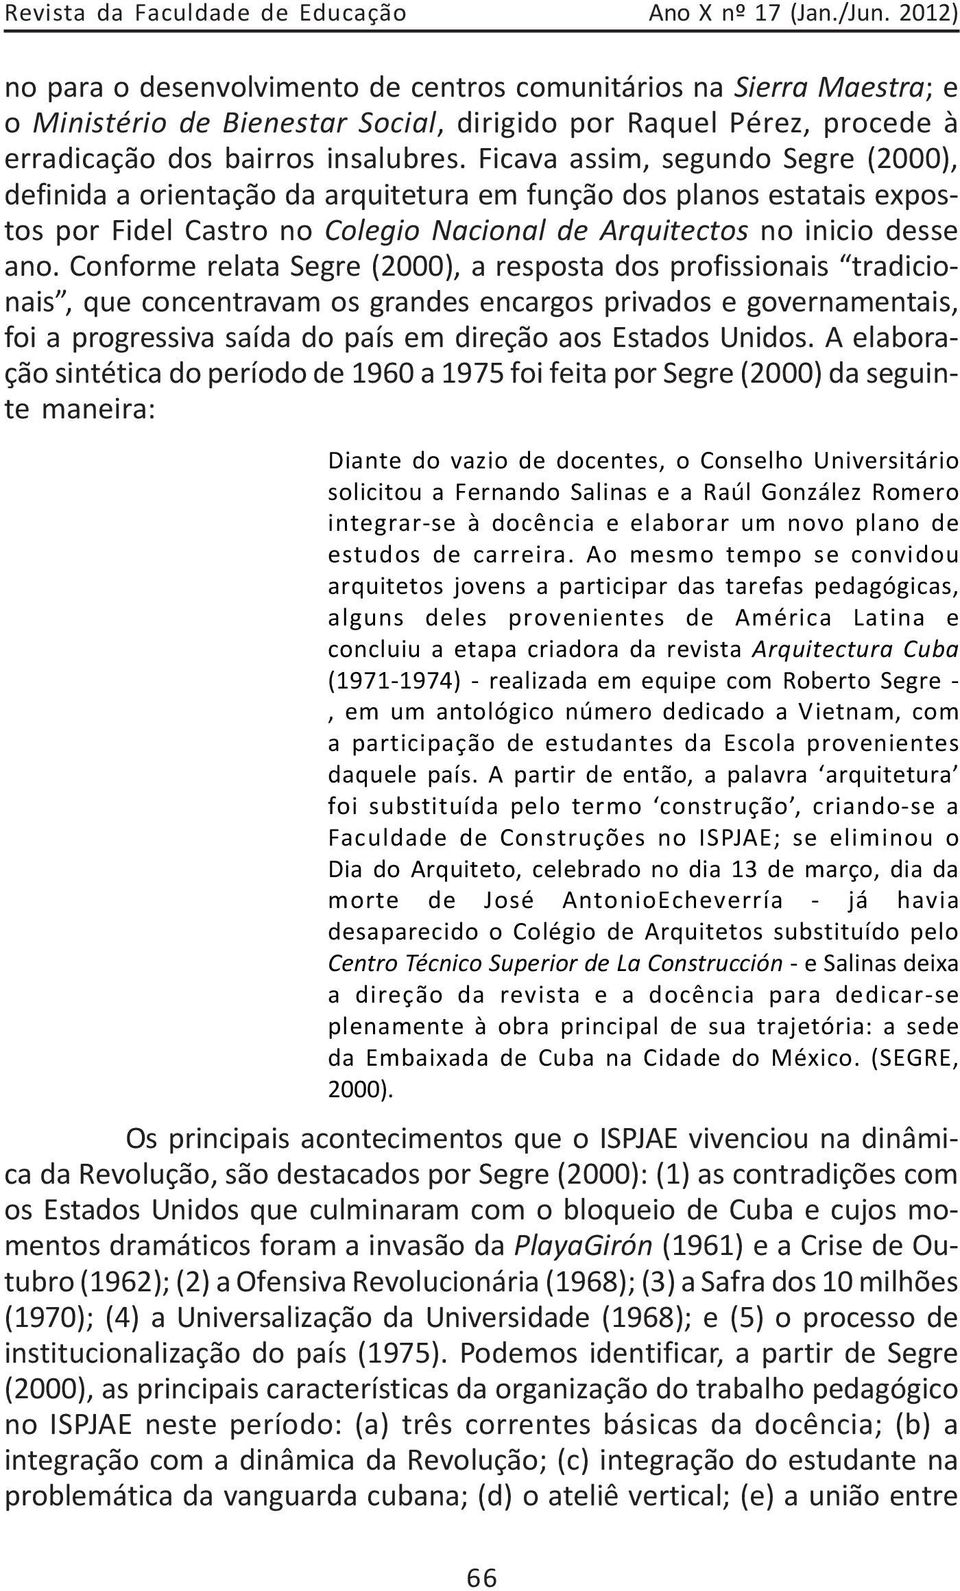 Ficava assim, segundo Segre (2000), definida a orientação da arquitetura em função dos planos estatais expostos por Fidel Castro no Colegio Nacional de Arquitectos no inicio desse ano.